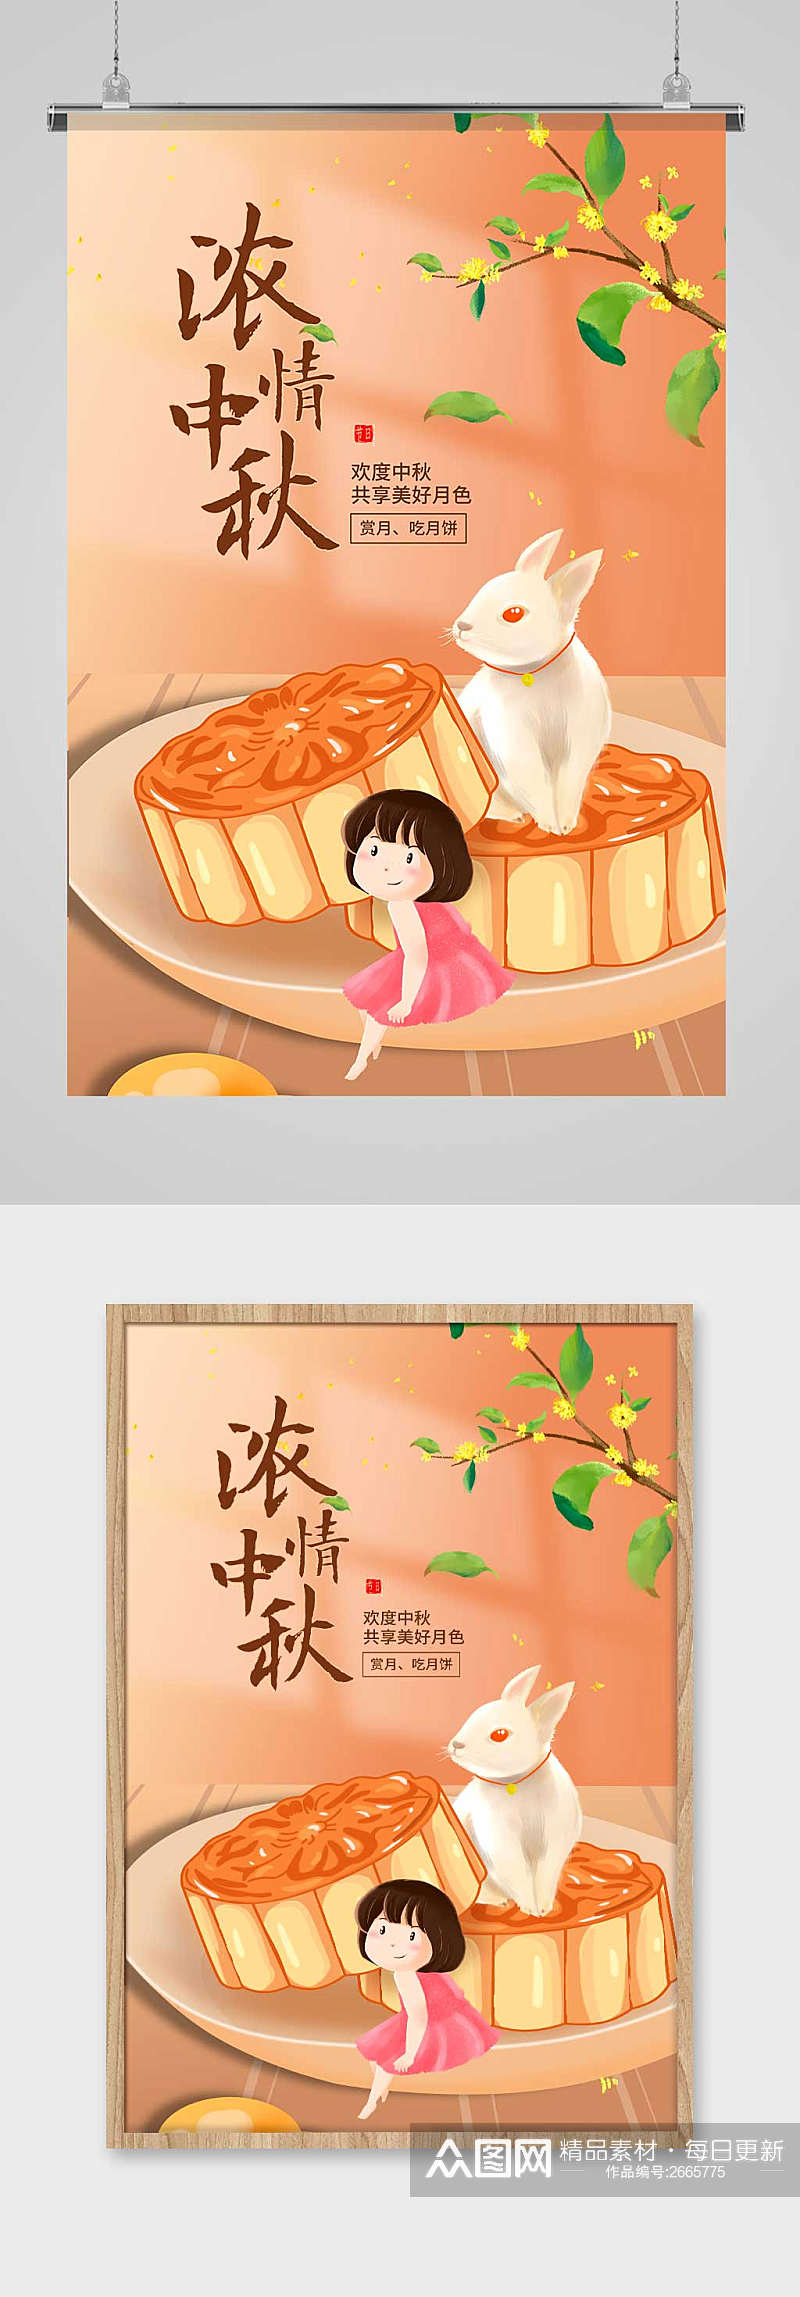 黄色卡通浓情中秋佳节宣传海报设计素材